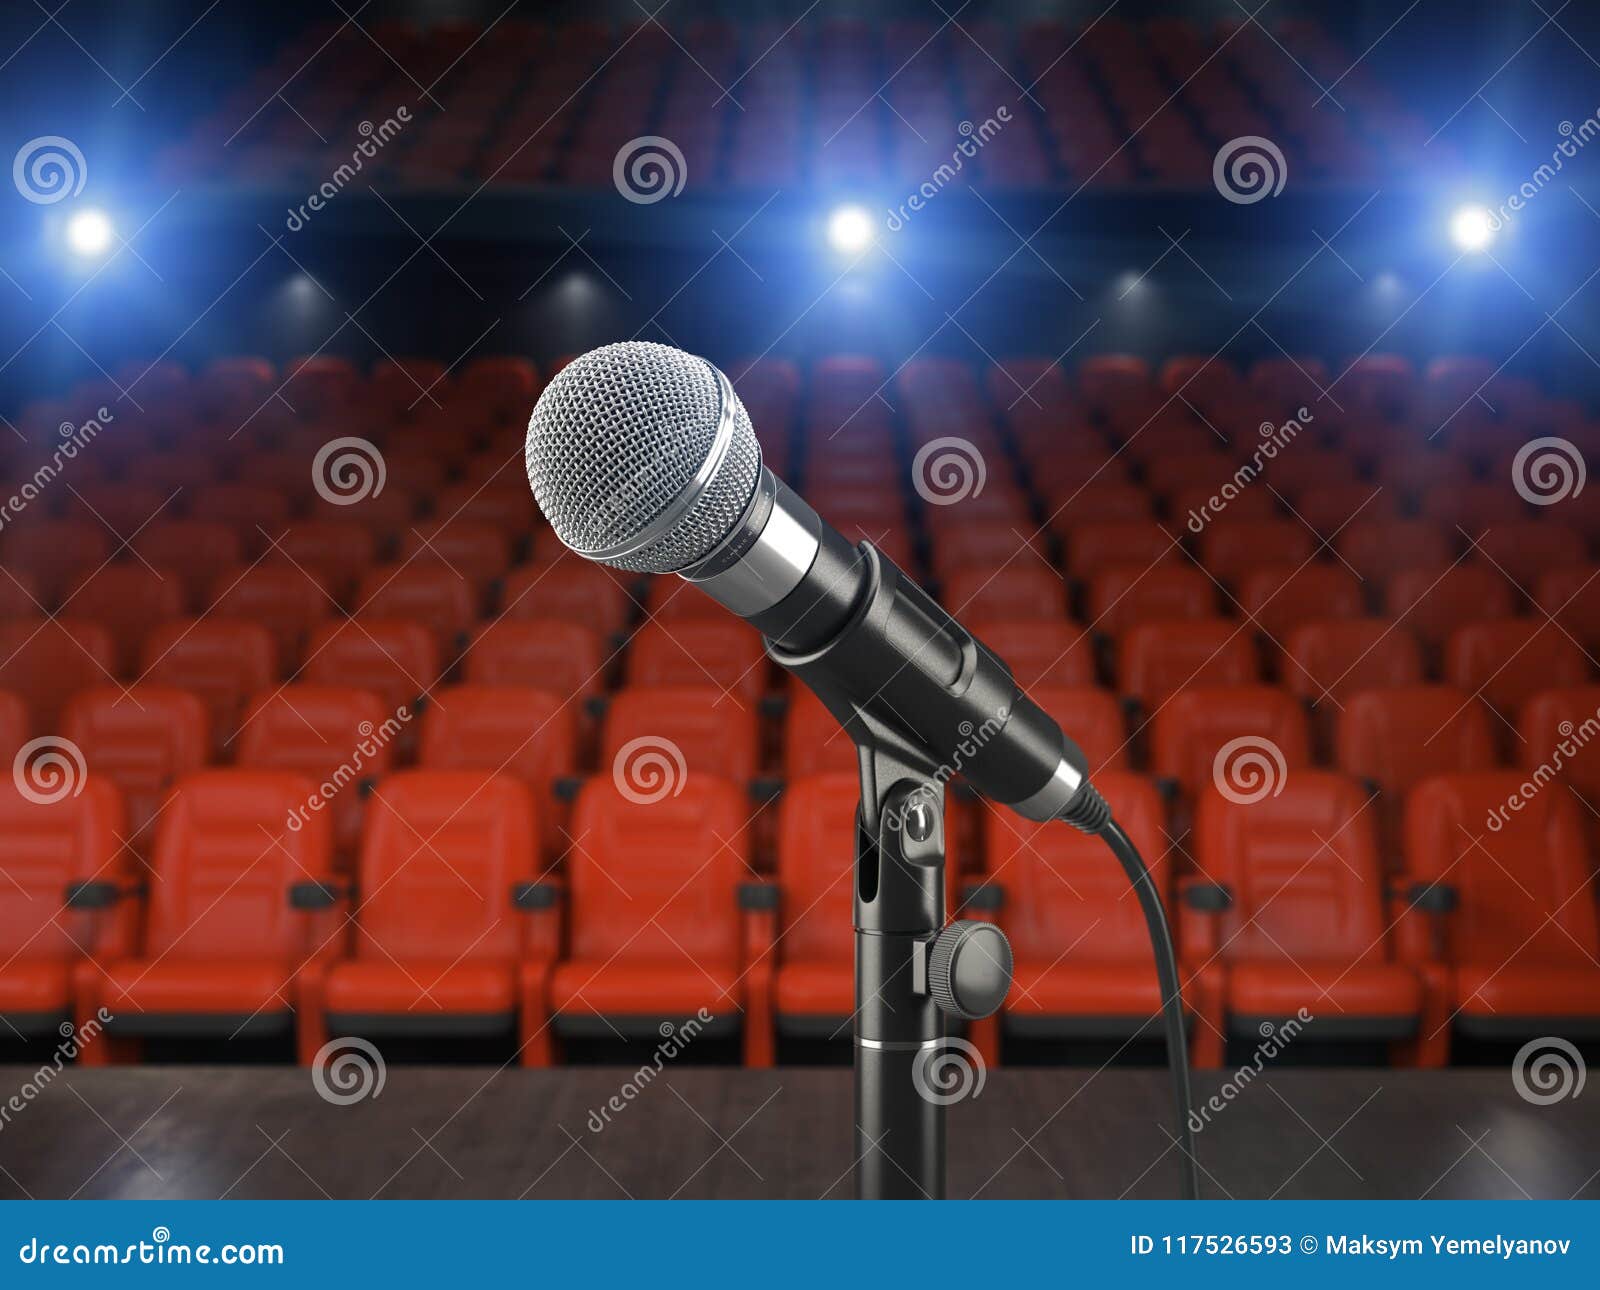 combinatie Hervat speling Microfoon Op Het Stadium Van Concertzaal of Theater Met Rode Zetel Stock  Illustratie - Illustration of uitzending, retro: 117526593